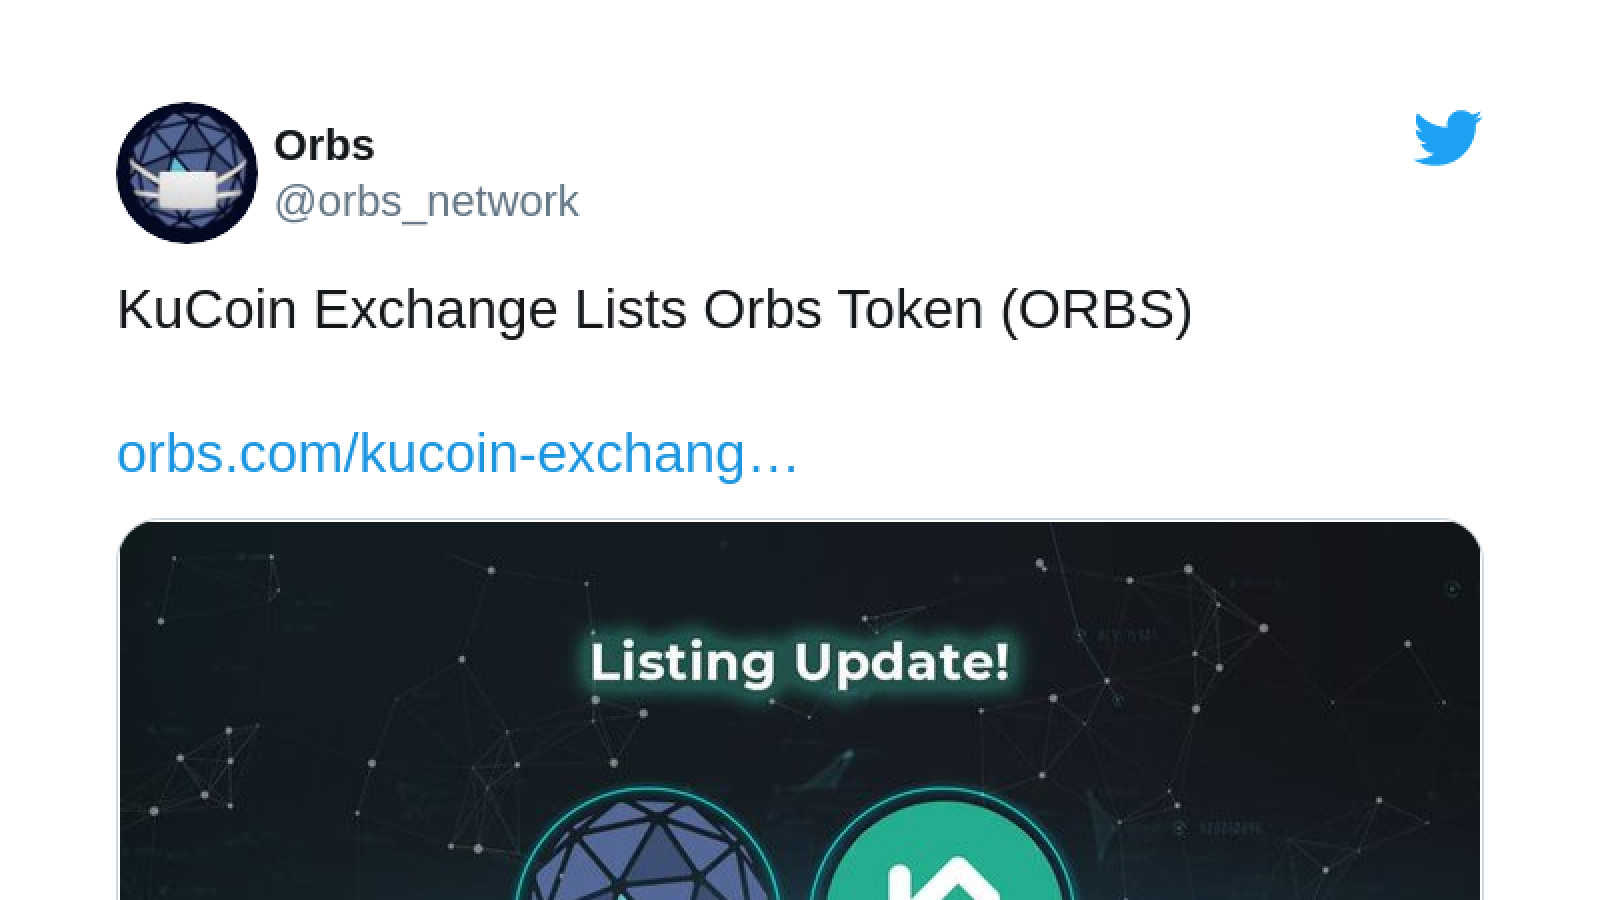 ORBS listed on KuCoin